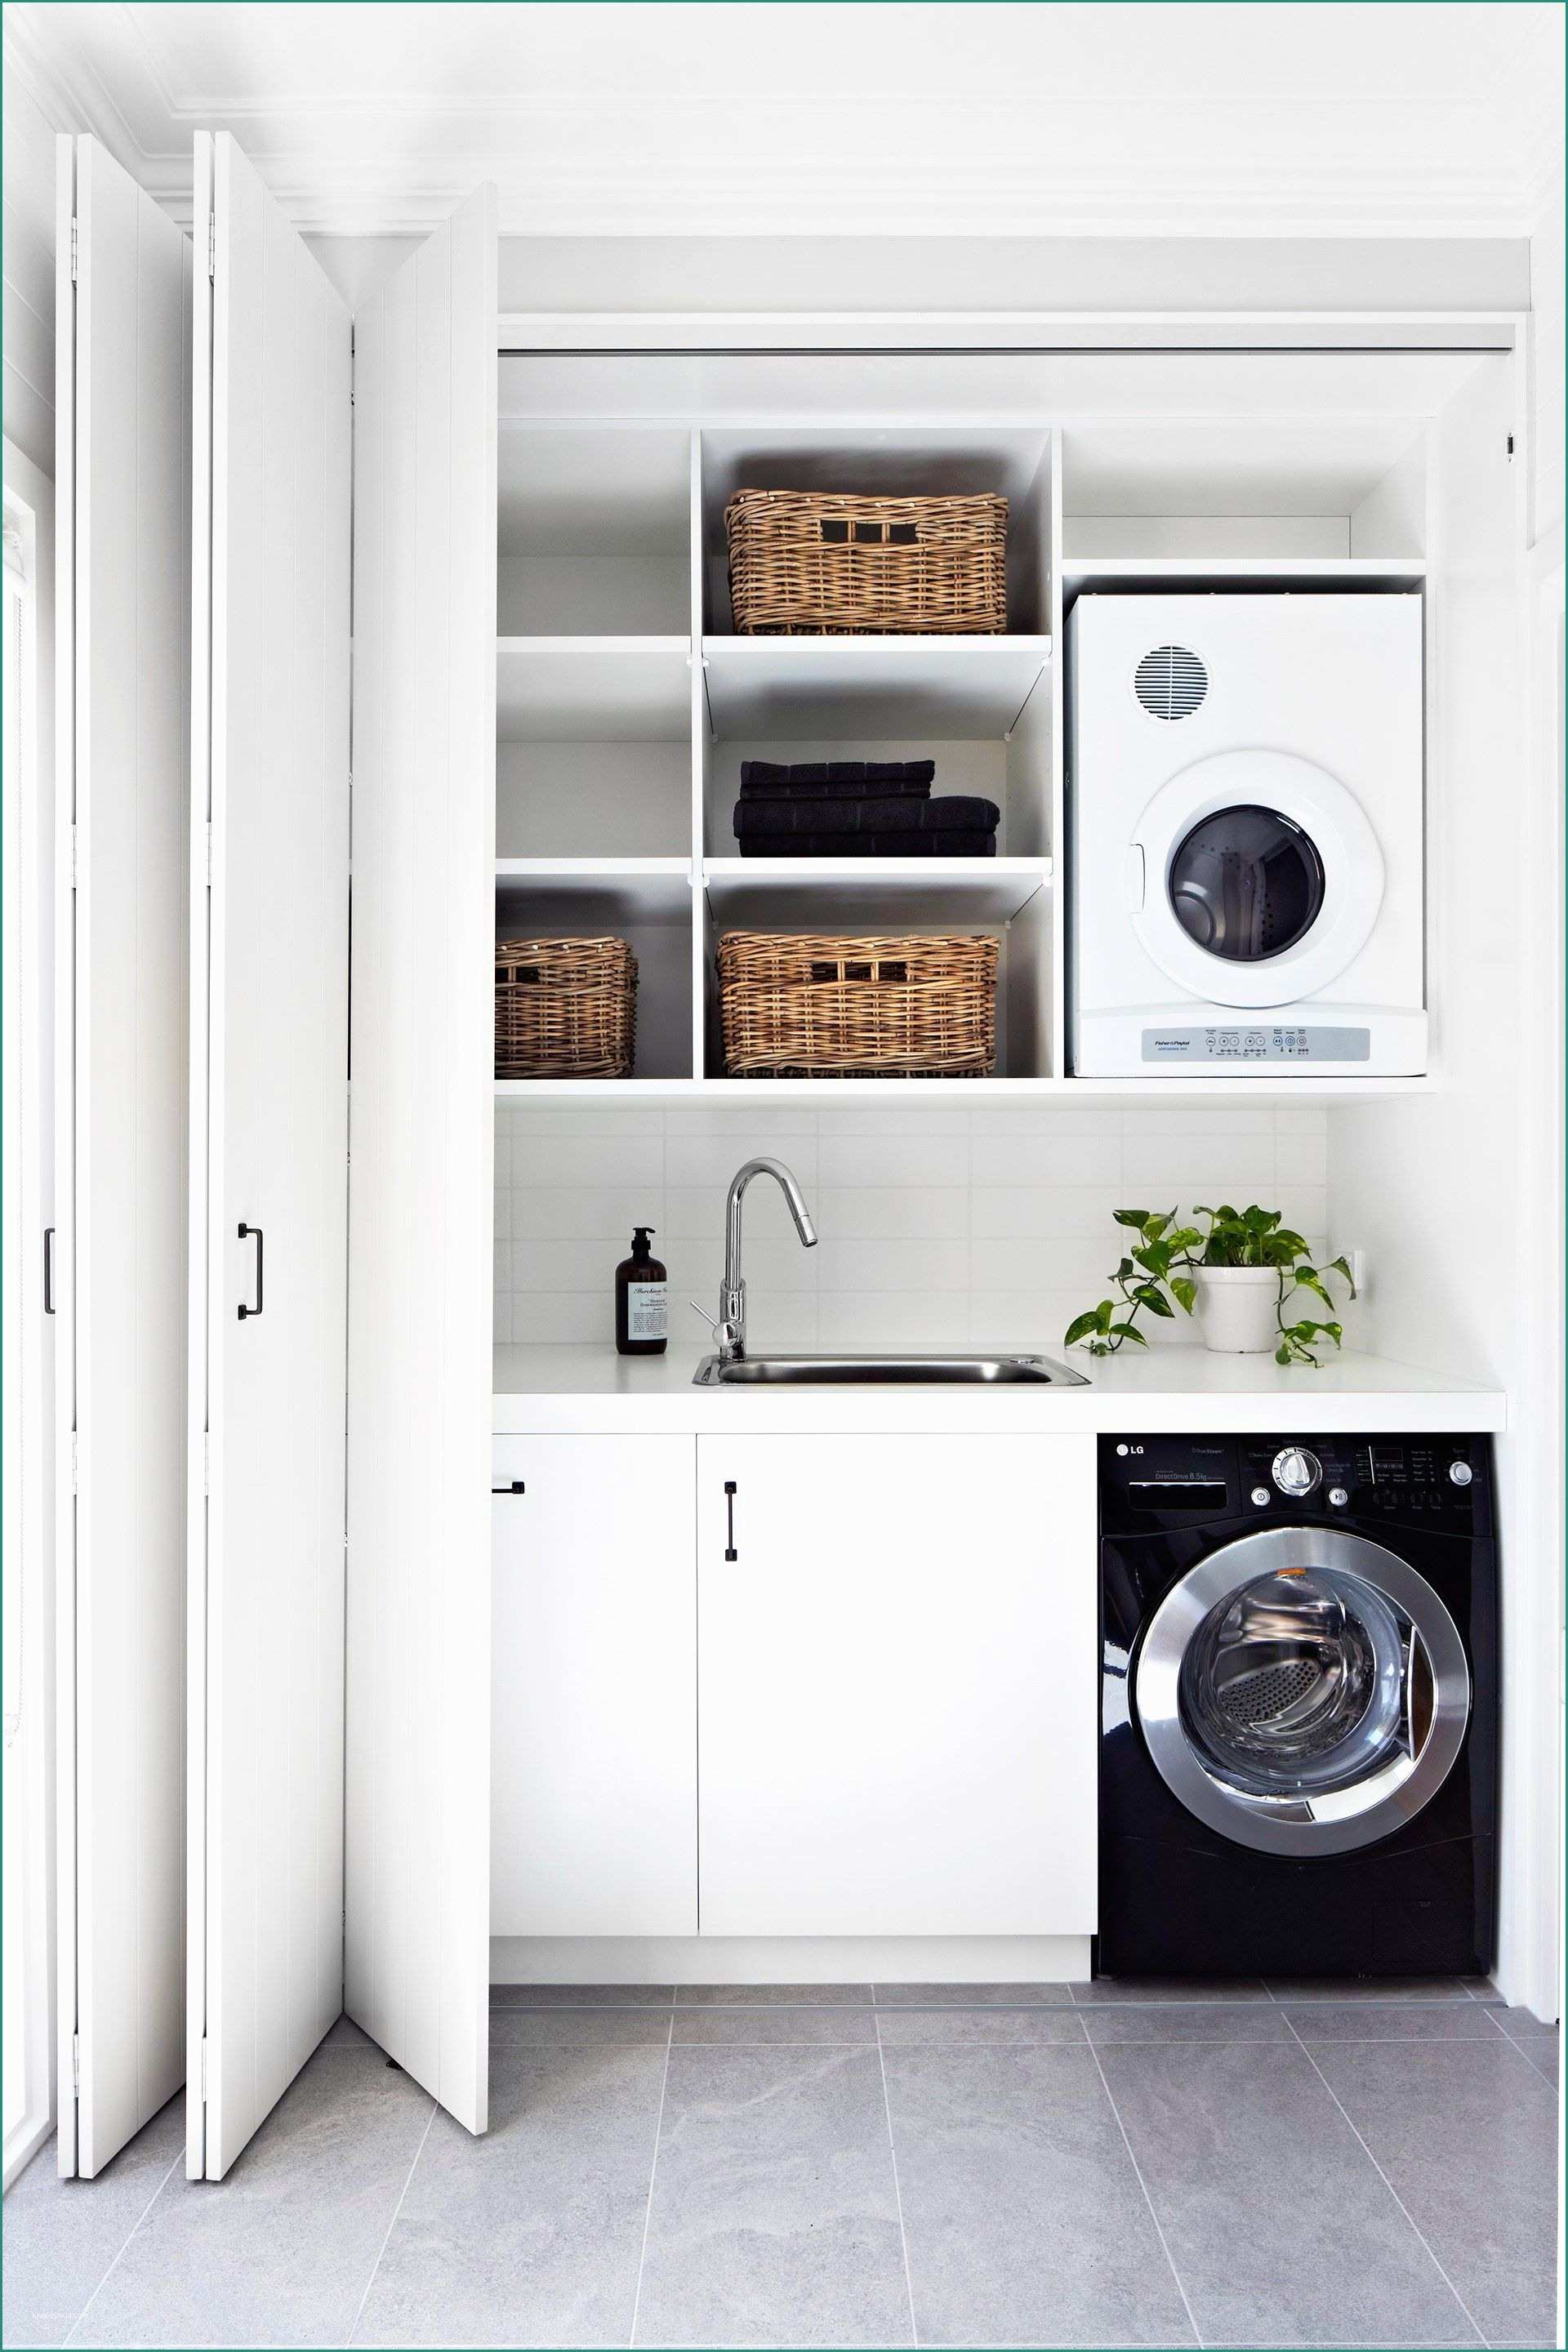 Mobile Lavatrice E asciugatrice In Colonna E Small Laundry Room Remodeling and Storage Ideas